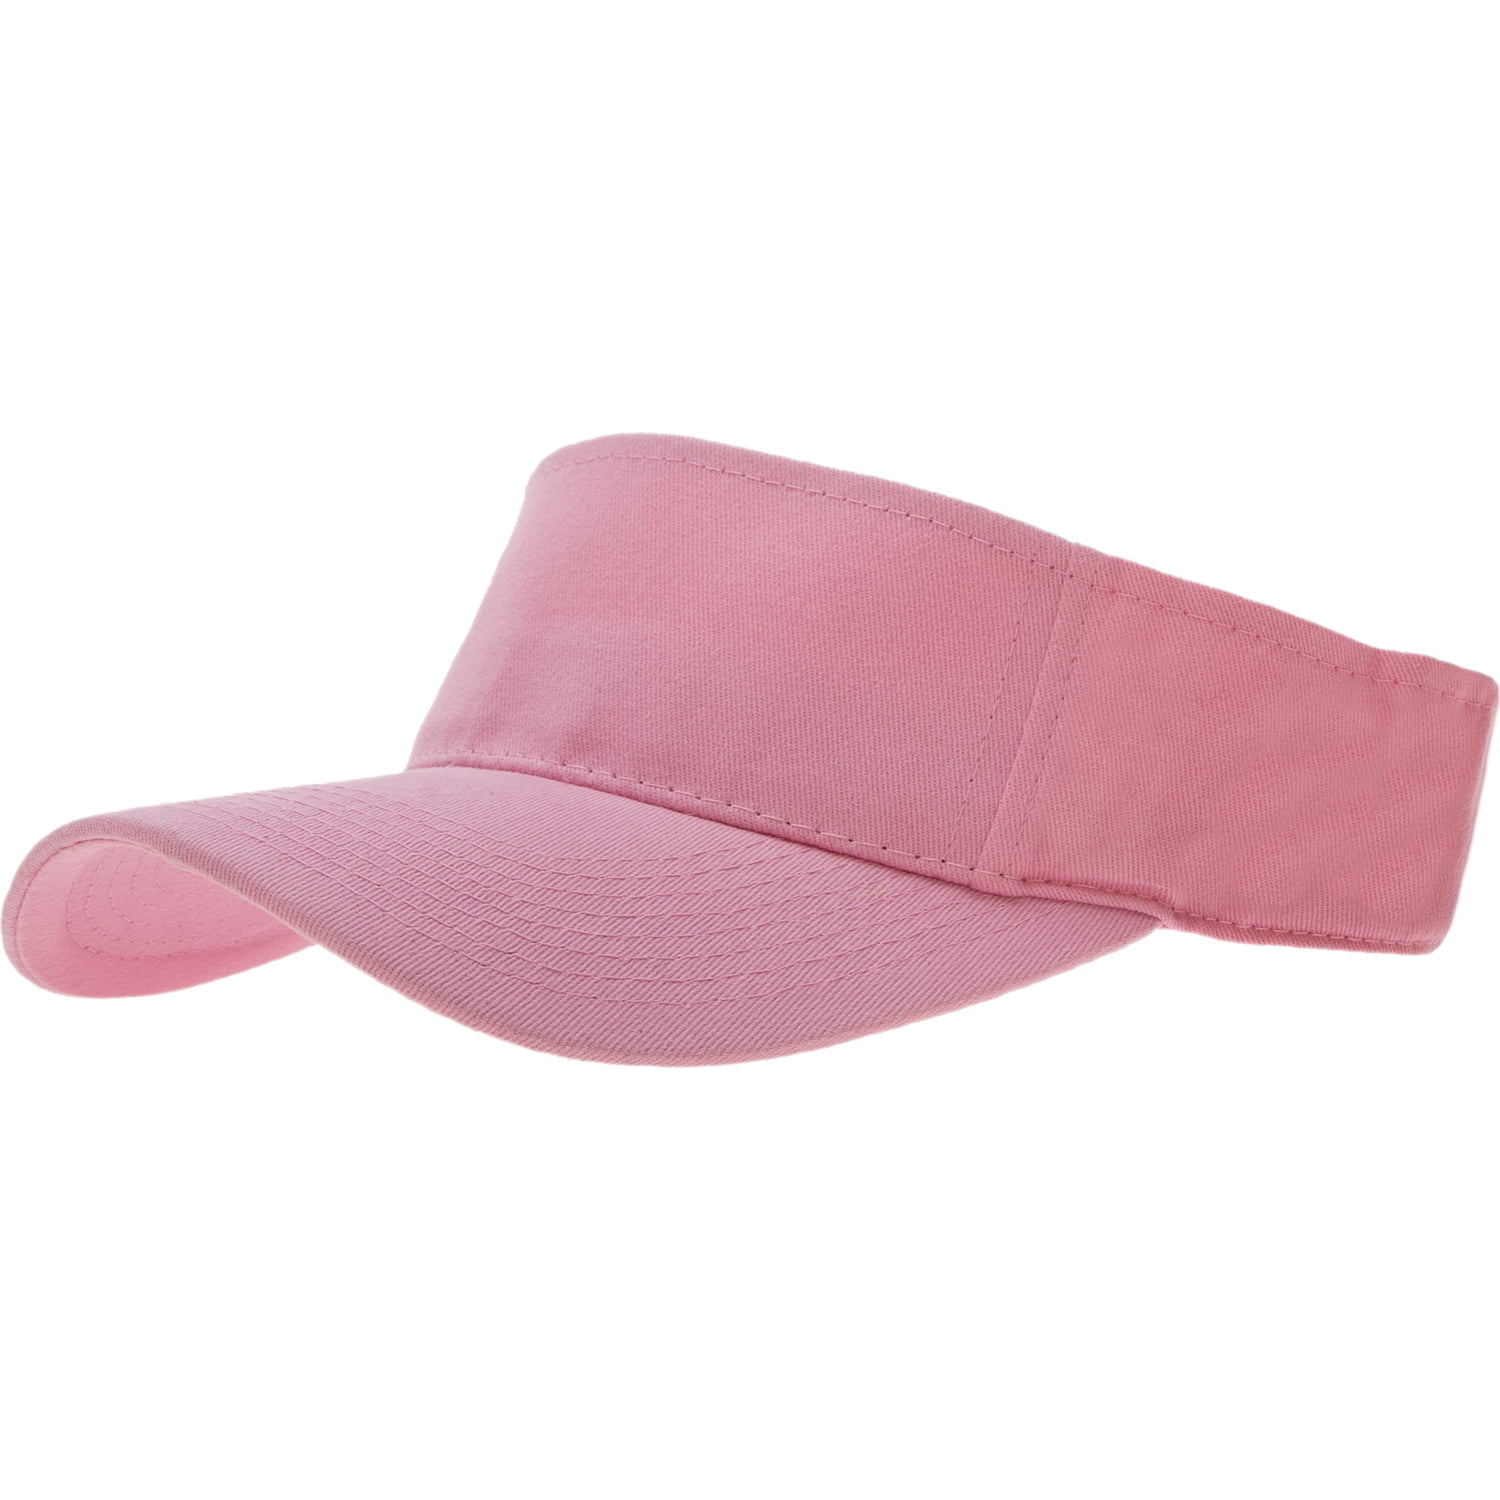 Light Pink Sun Visor HAT - Dozen Packed